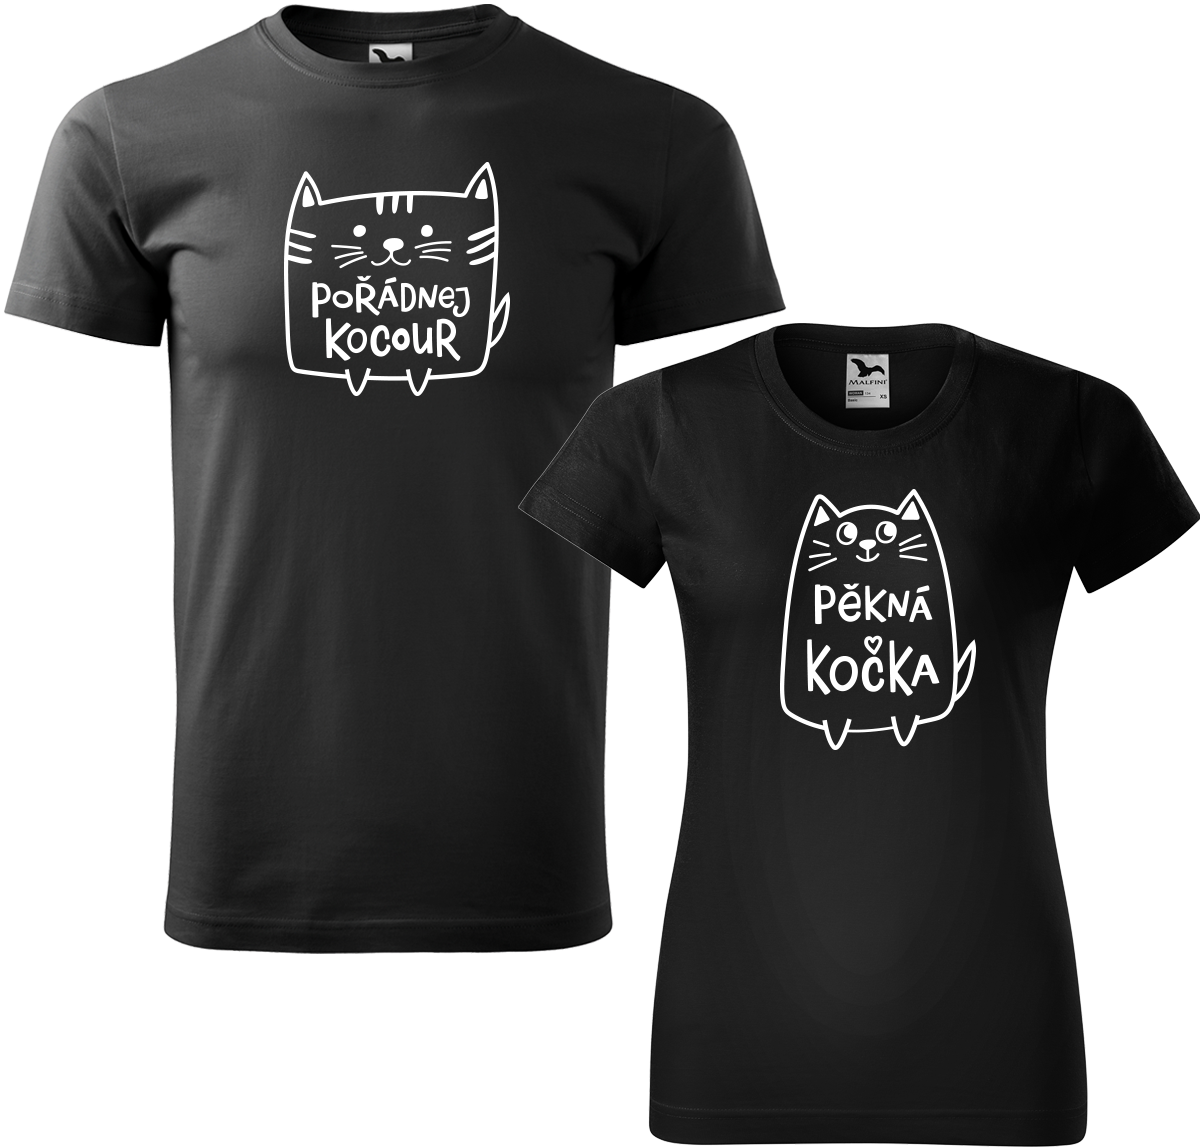 Trička pro páry - Pořádnej kocour a pěkná kočka Barva: Černá (01), Velikost dámské tričko: S, Velikost pánské tričko: S